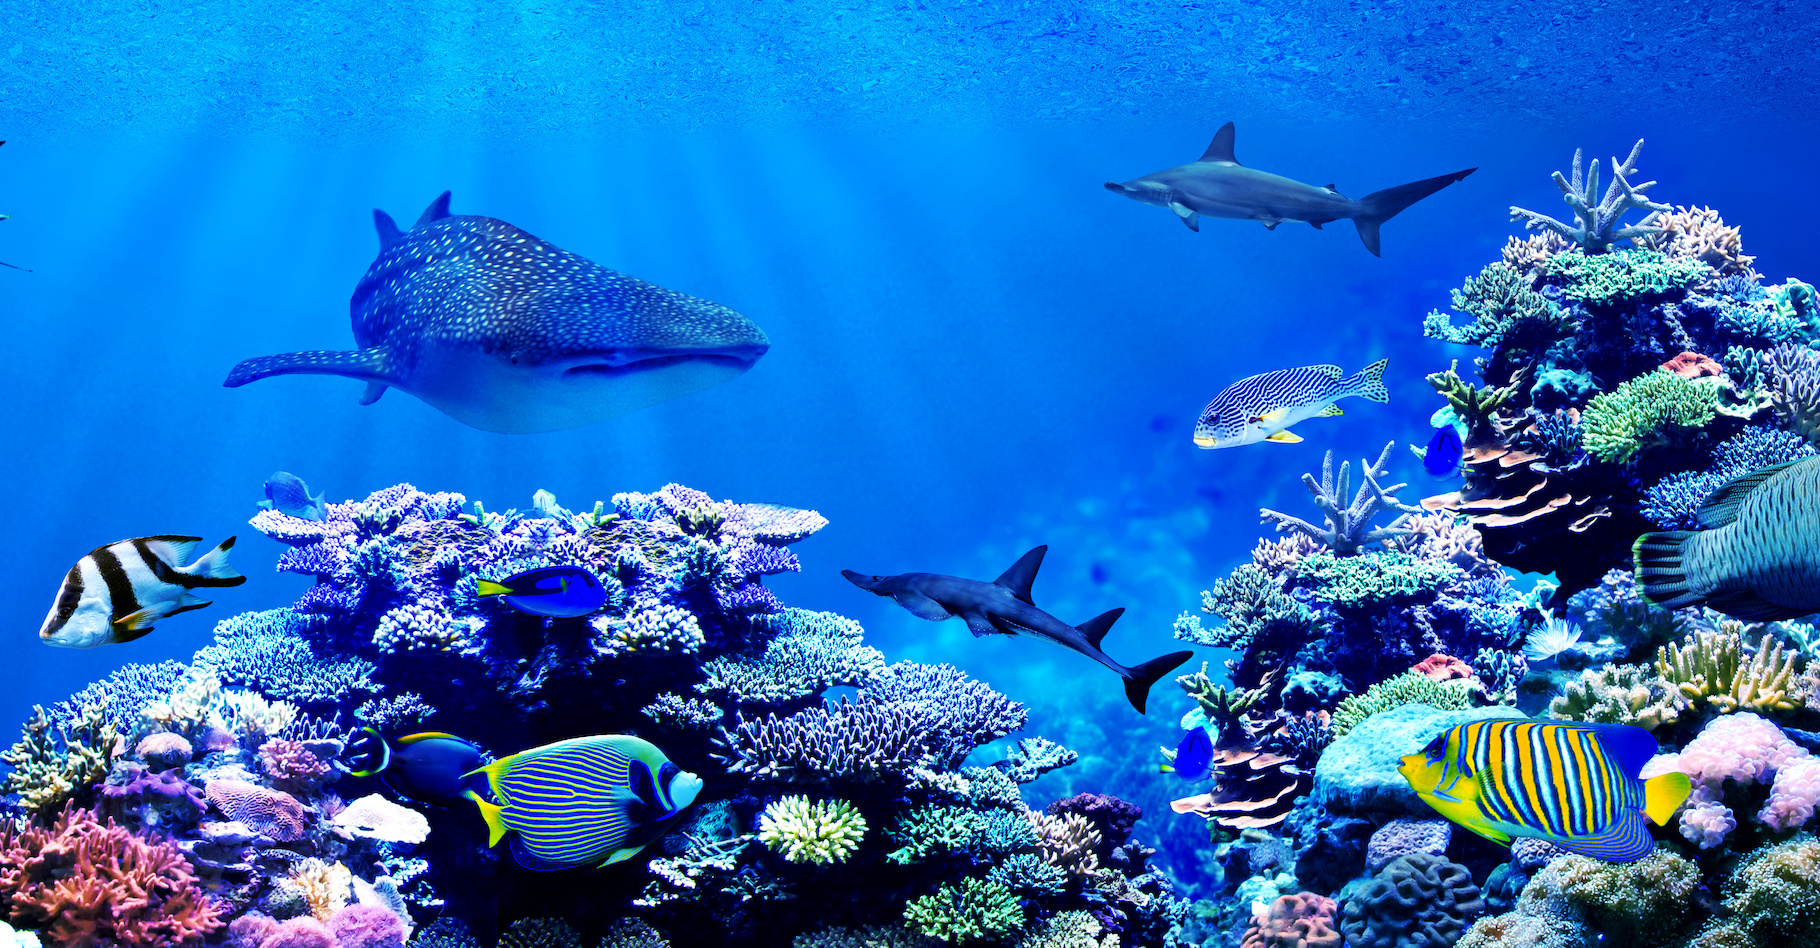 Les animaux marins peuvent désormais trouver refuge dans des sanctuaires créés un peu partout dans le monde. © Chonlasub, Adobe Stock